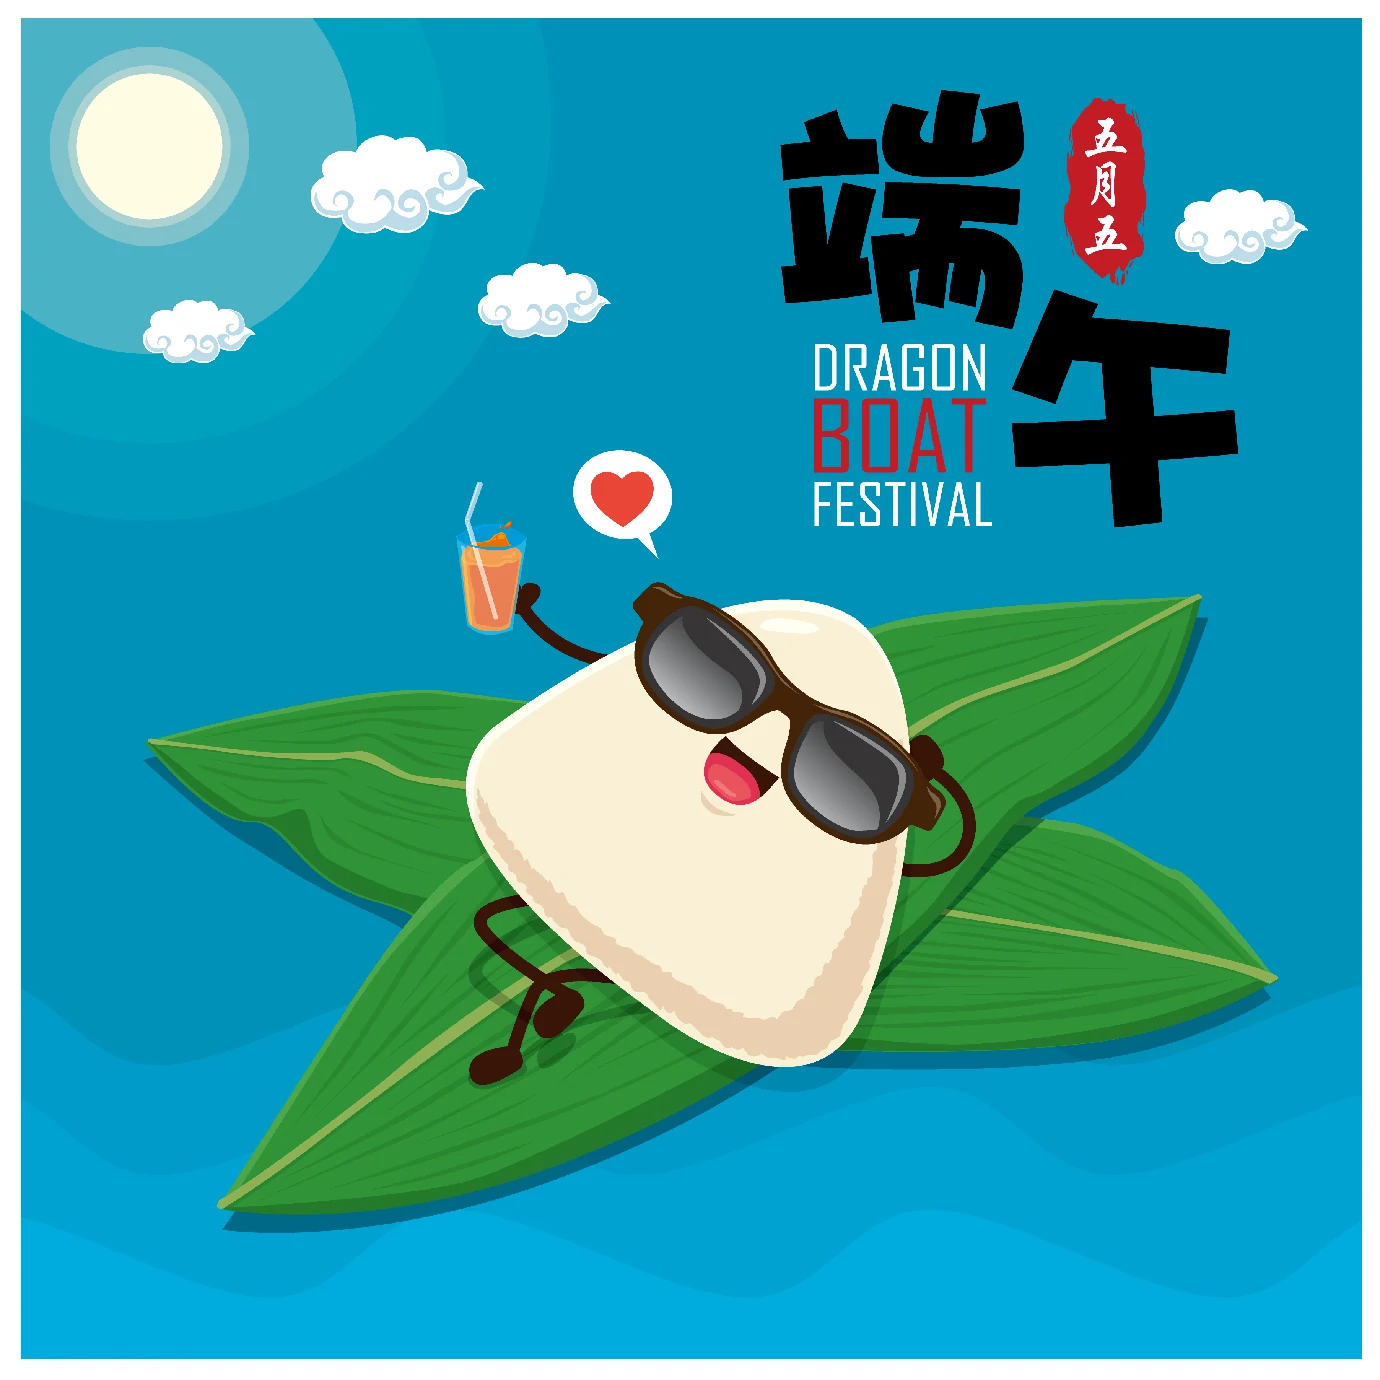 中国传统节日卡通手绘端午节赛龙舟粽子插画海报AI矢量设计素材【058】